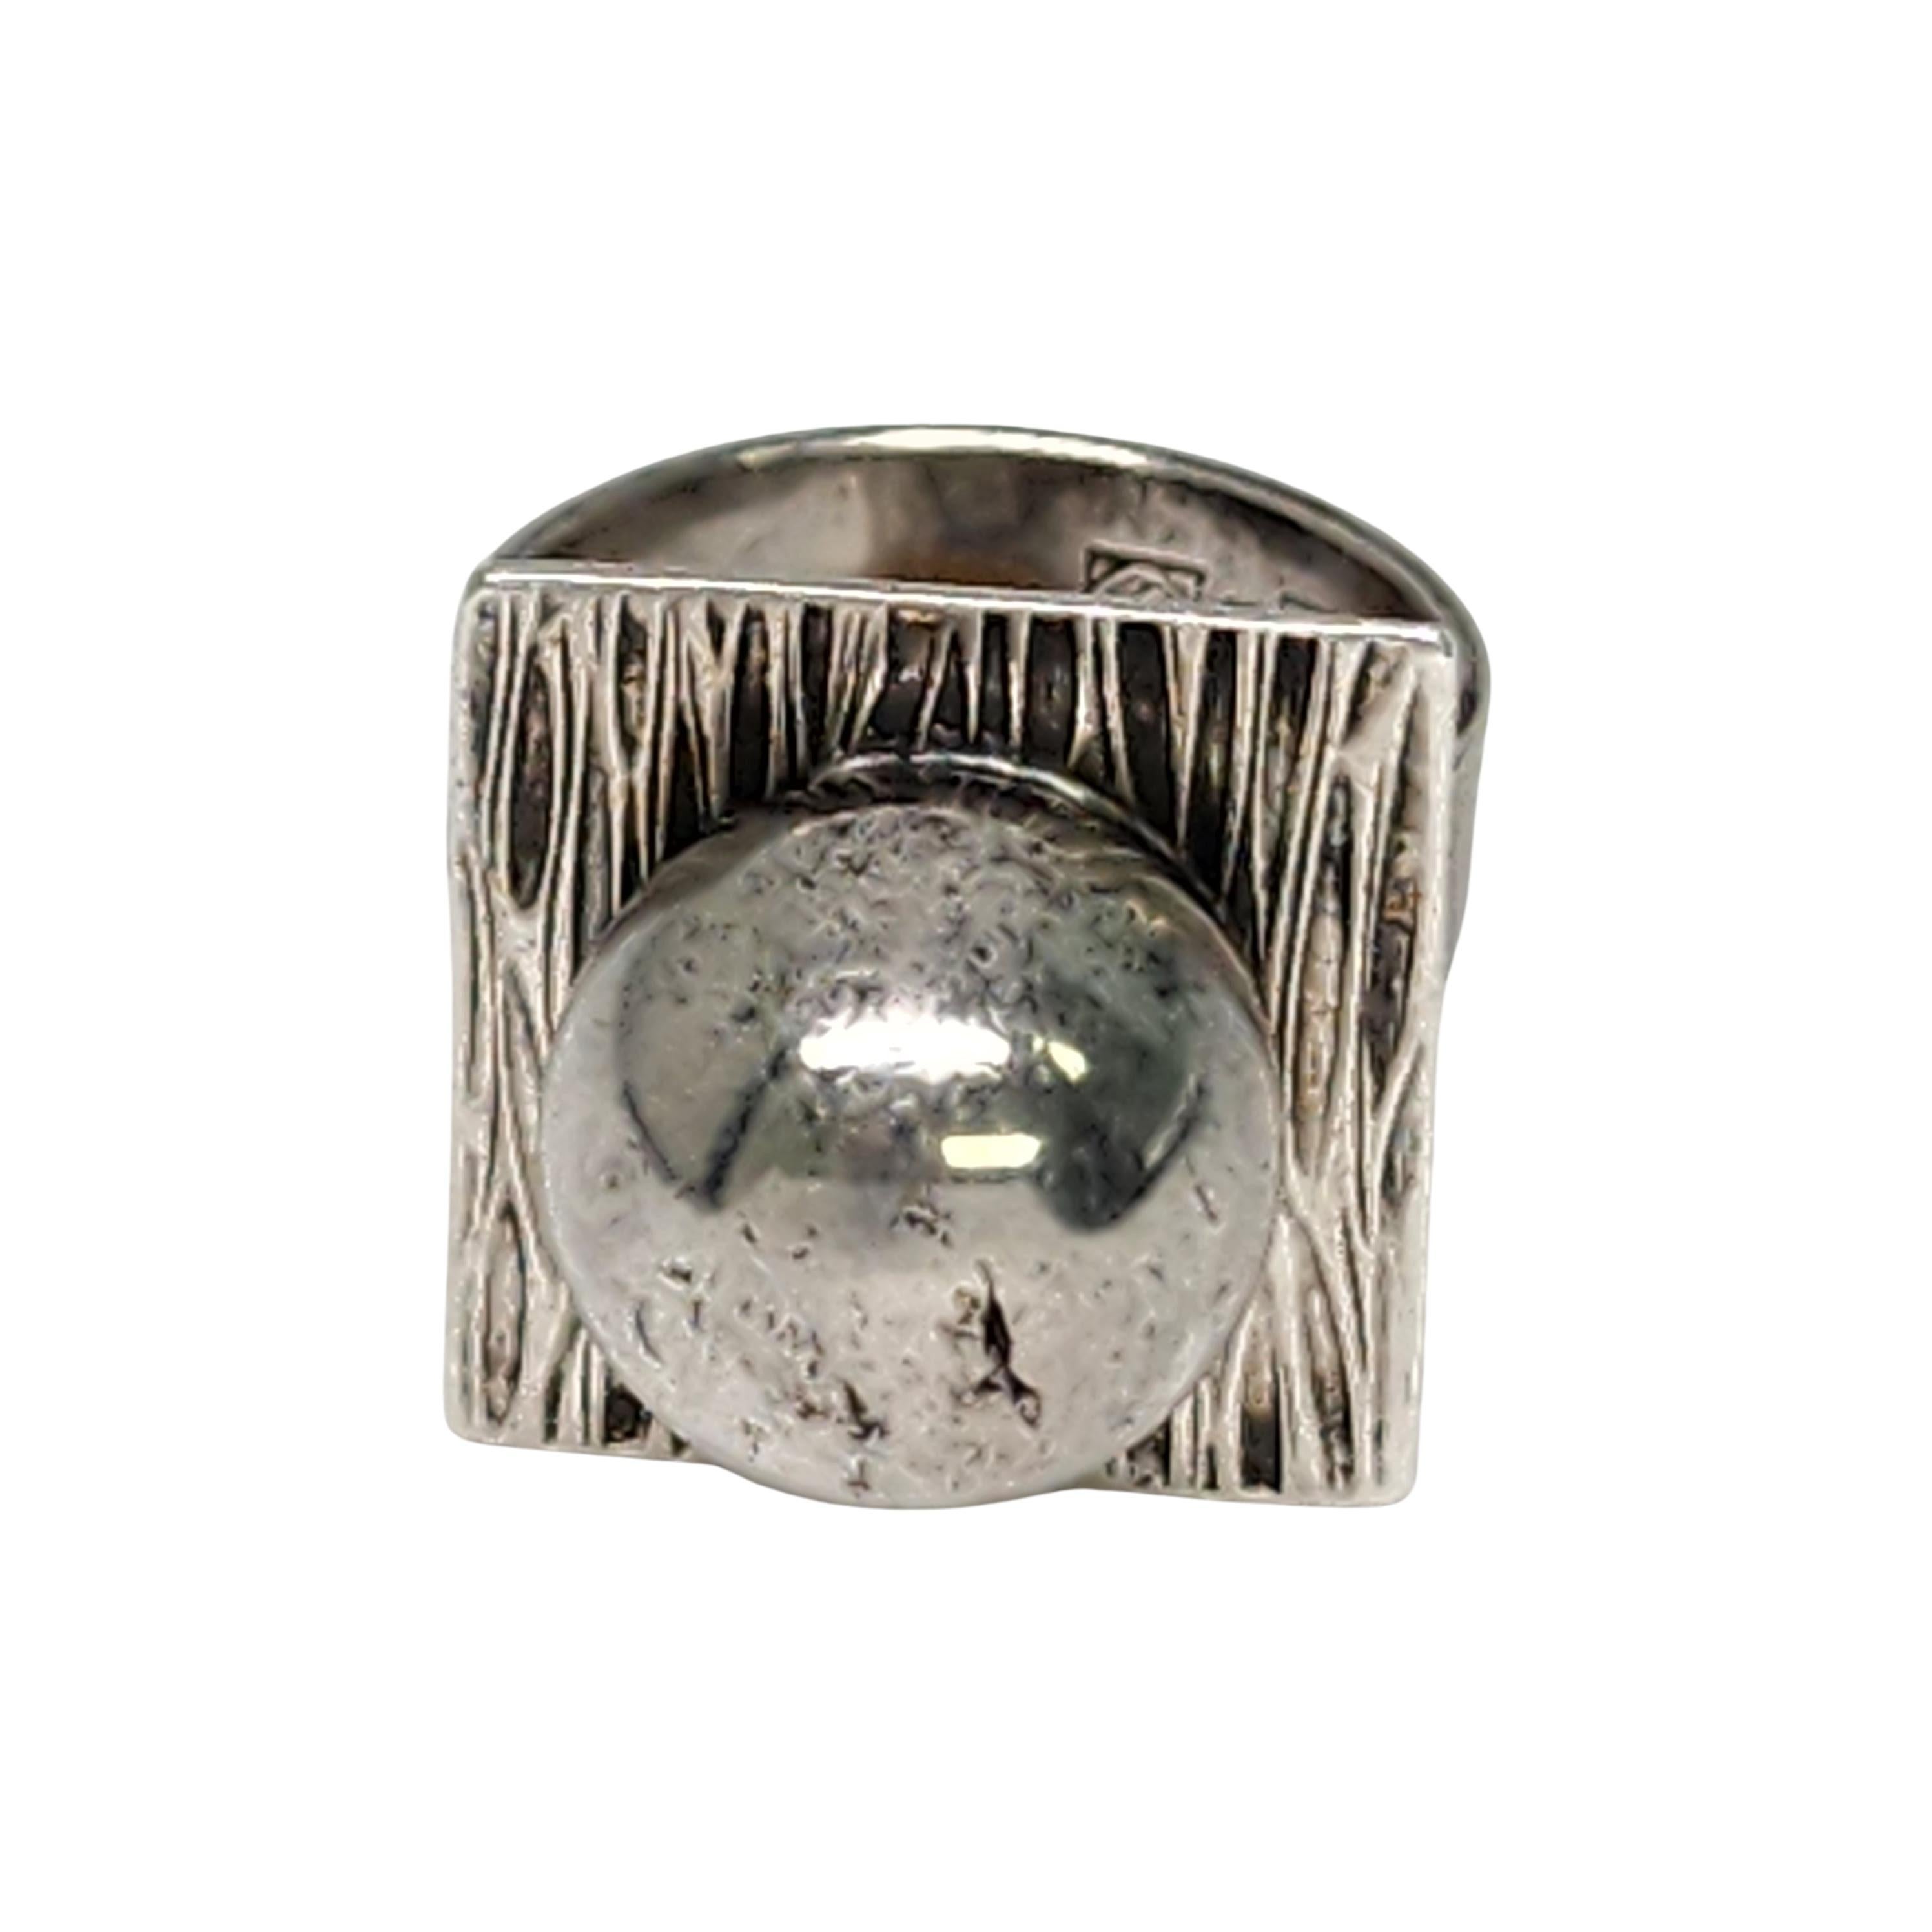 Vintage Erik Granit Finland Sterling Silver Modernist Ball Ring Size 5.5 #16699 For Sale 2